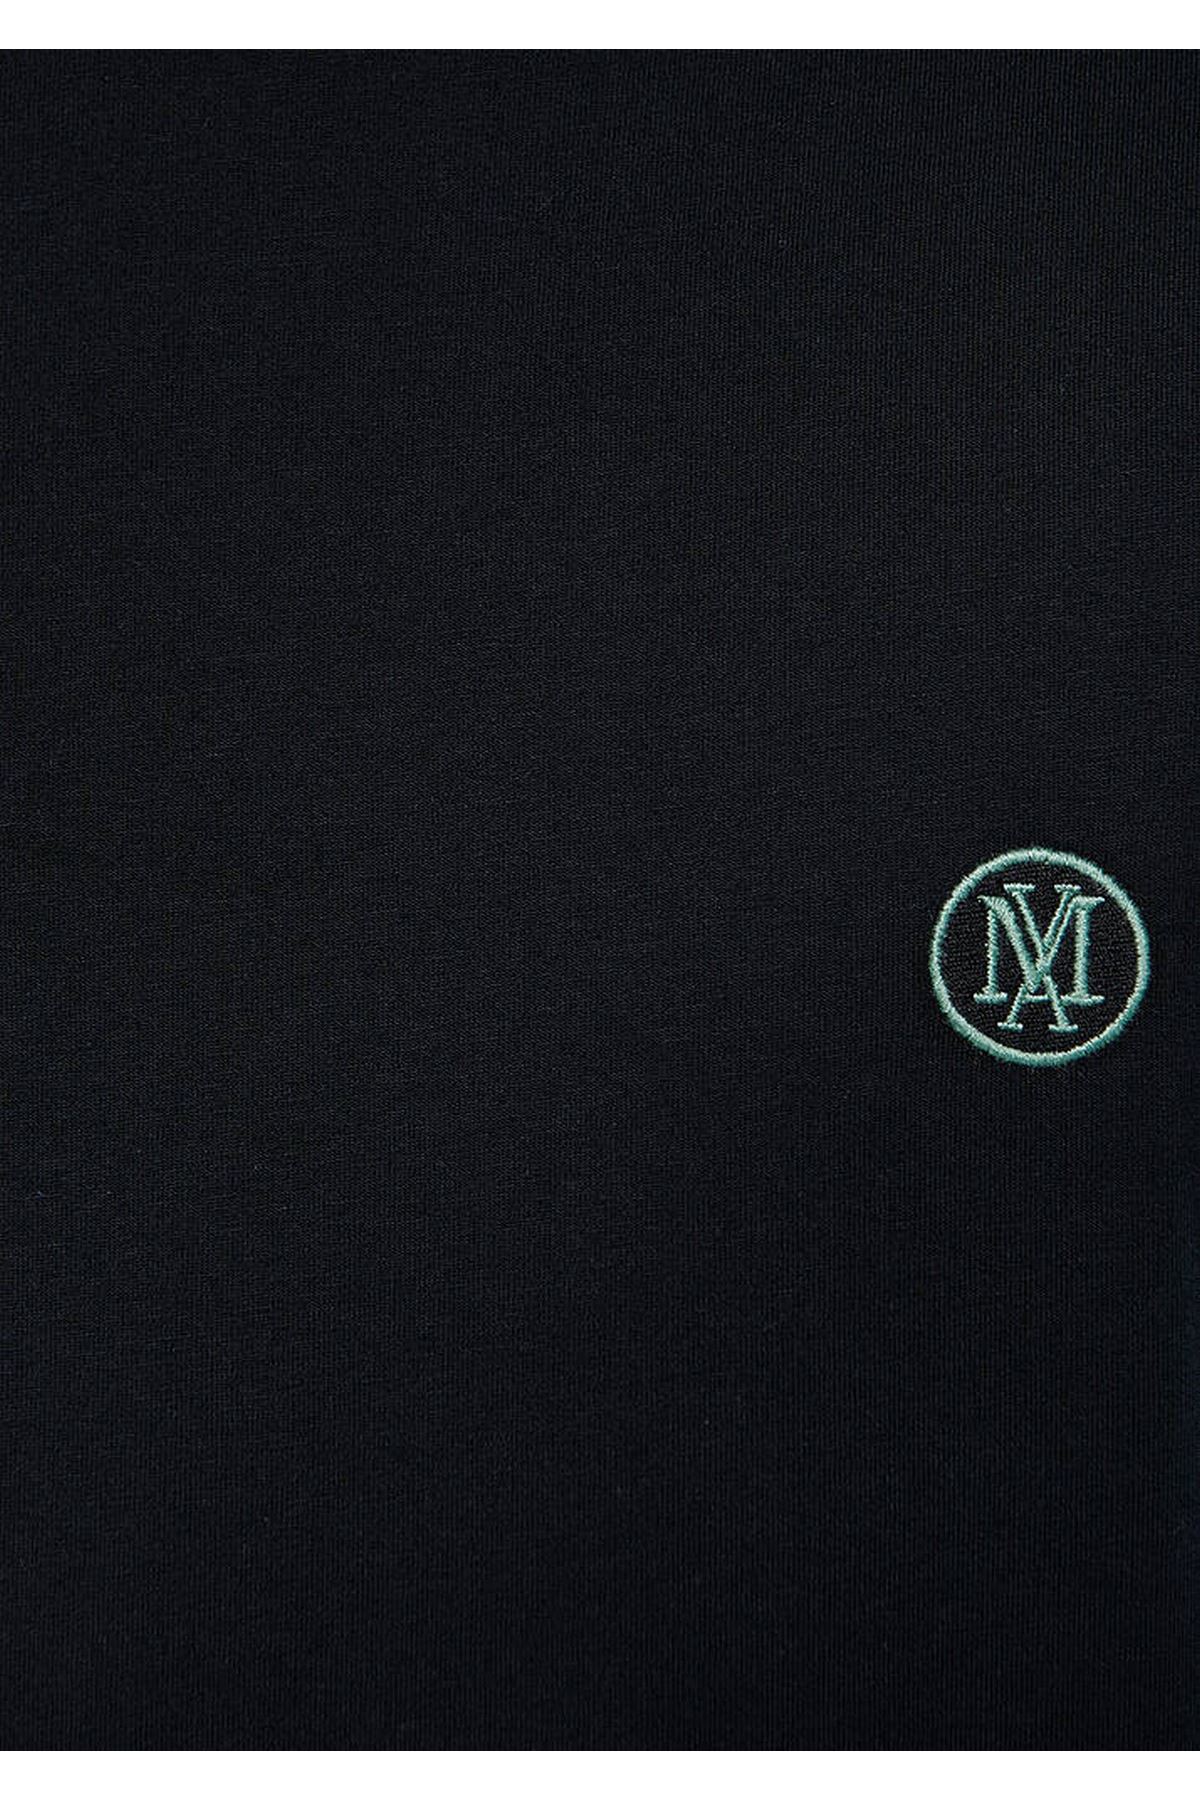 Logo Nakışlı  Mavi Erkek Siyah Tişört - M067074-900